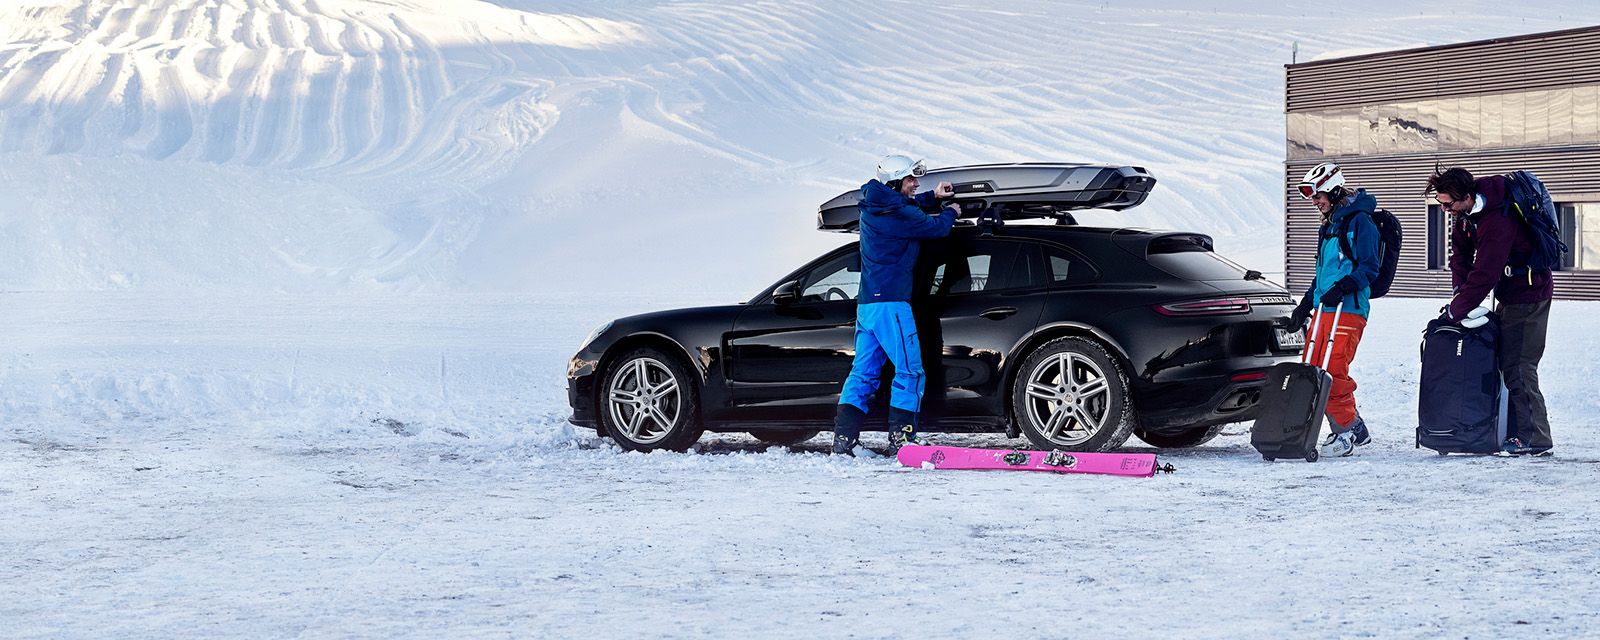 Kaksi ihmistä seisoo lumessa ja pakkaa hiihtovarusteita autoon ja katolle asennettavaan kuljetuslaatikkoon.